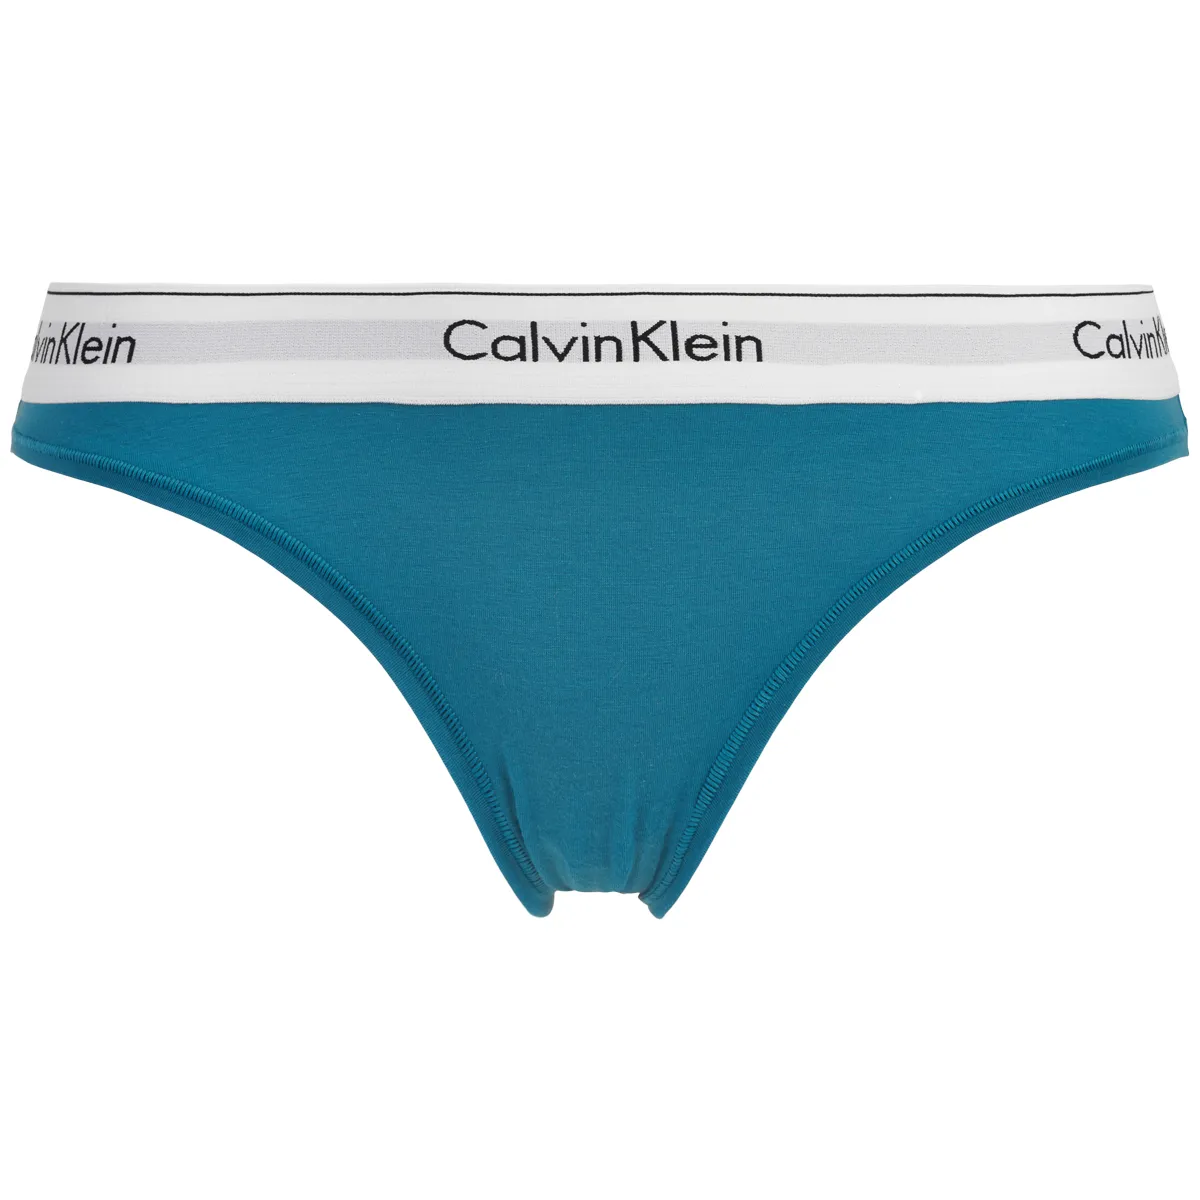 Støv kollision TVsæt Calvin Klein • CALVIN KLEIN G-STRENG, BLÅ • Pris kr. 152.1